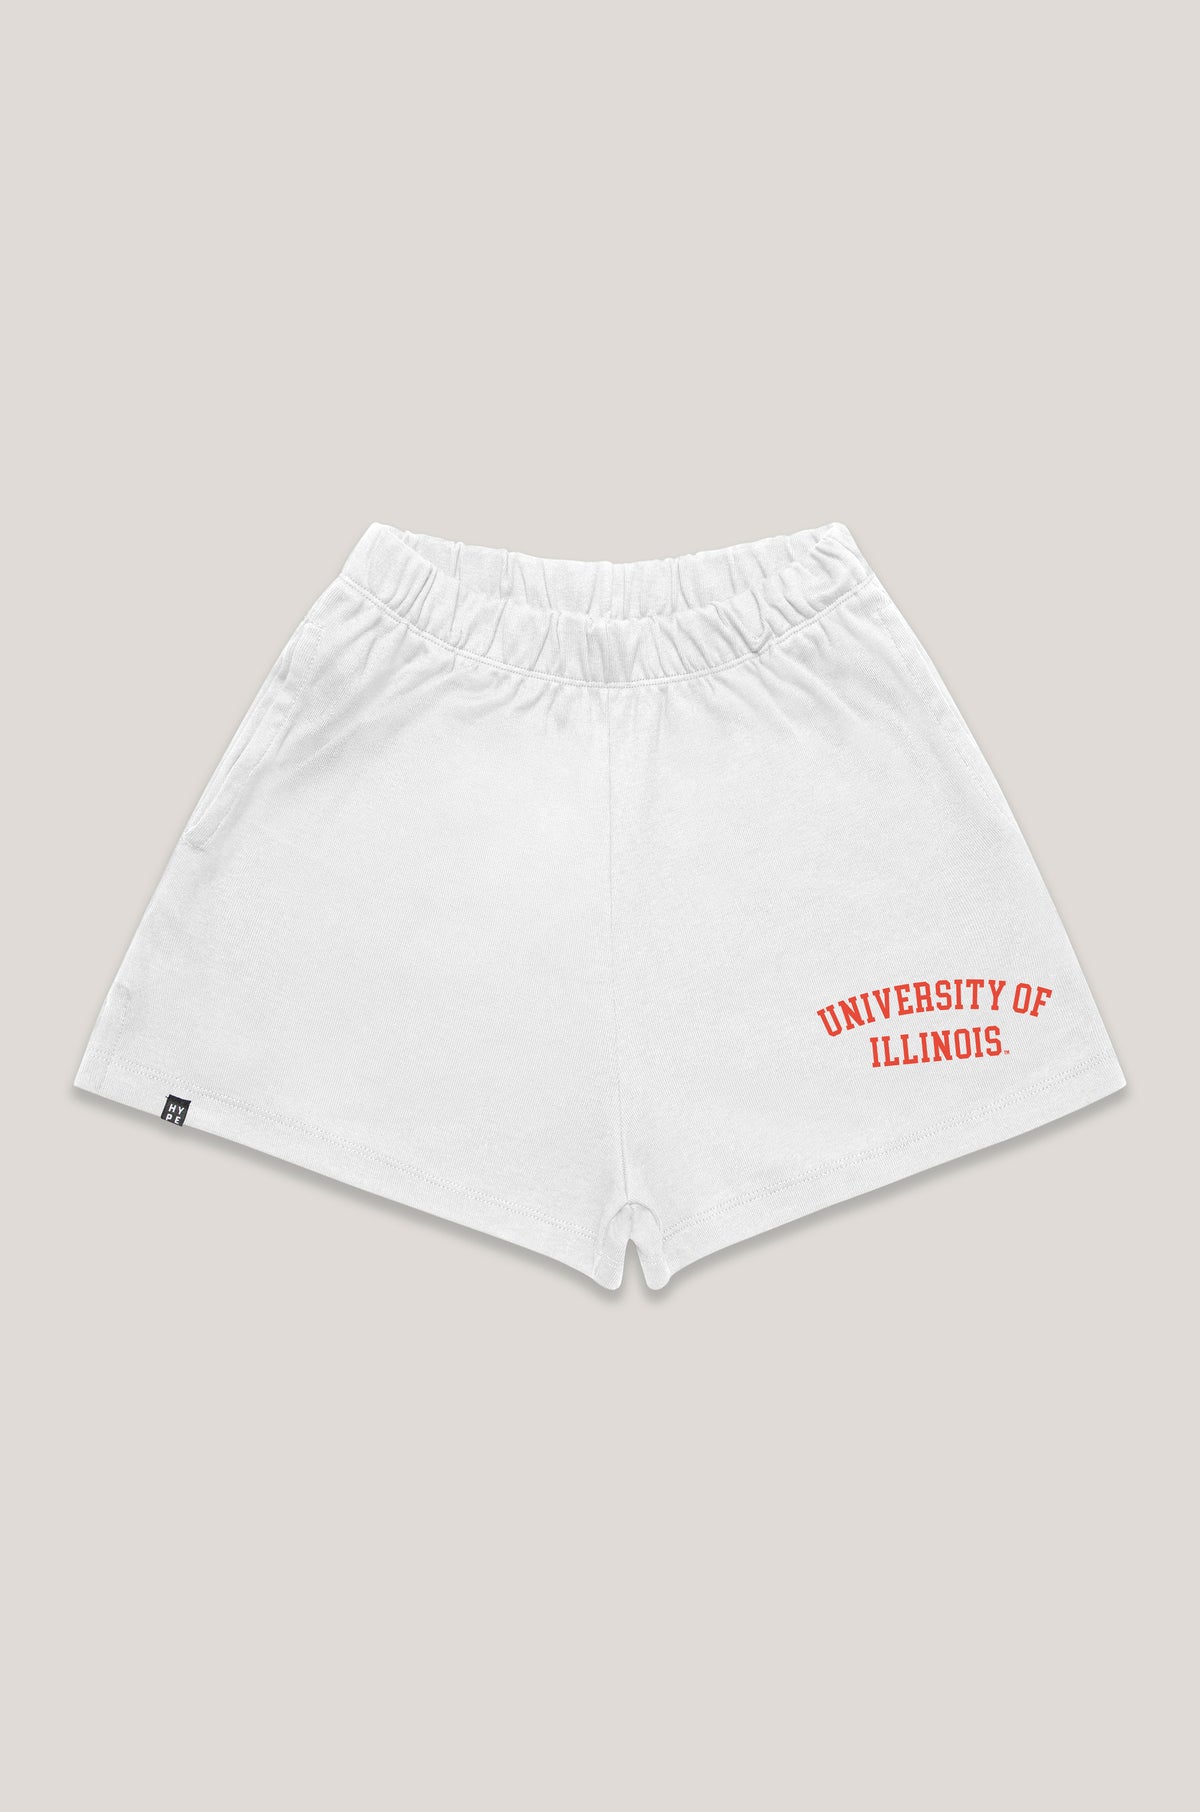 University of Illinois Track Shorts